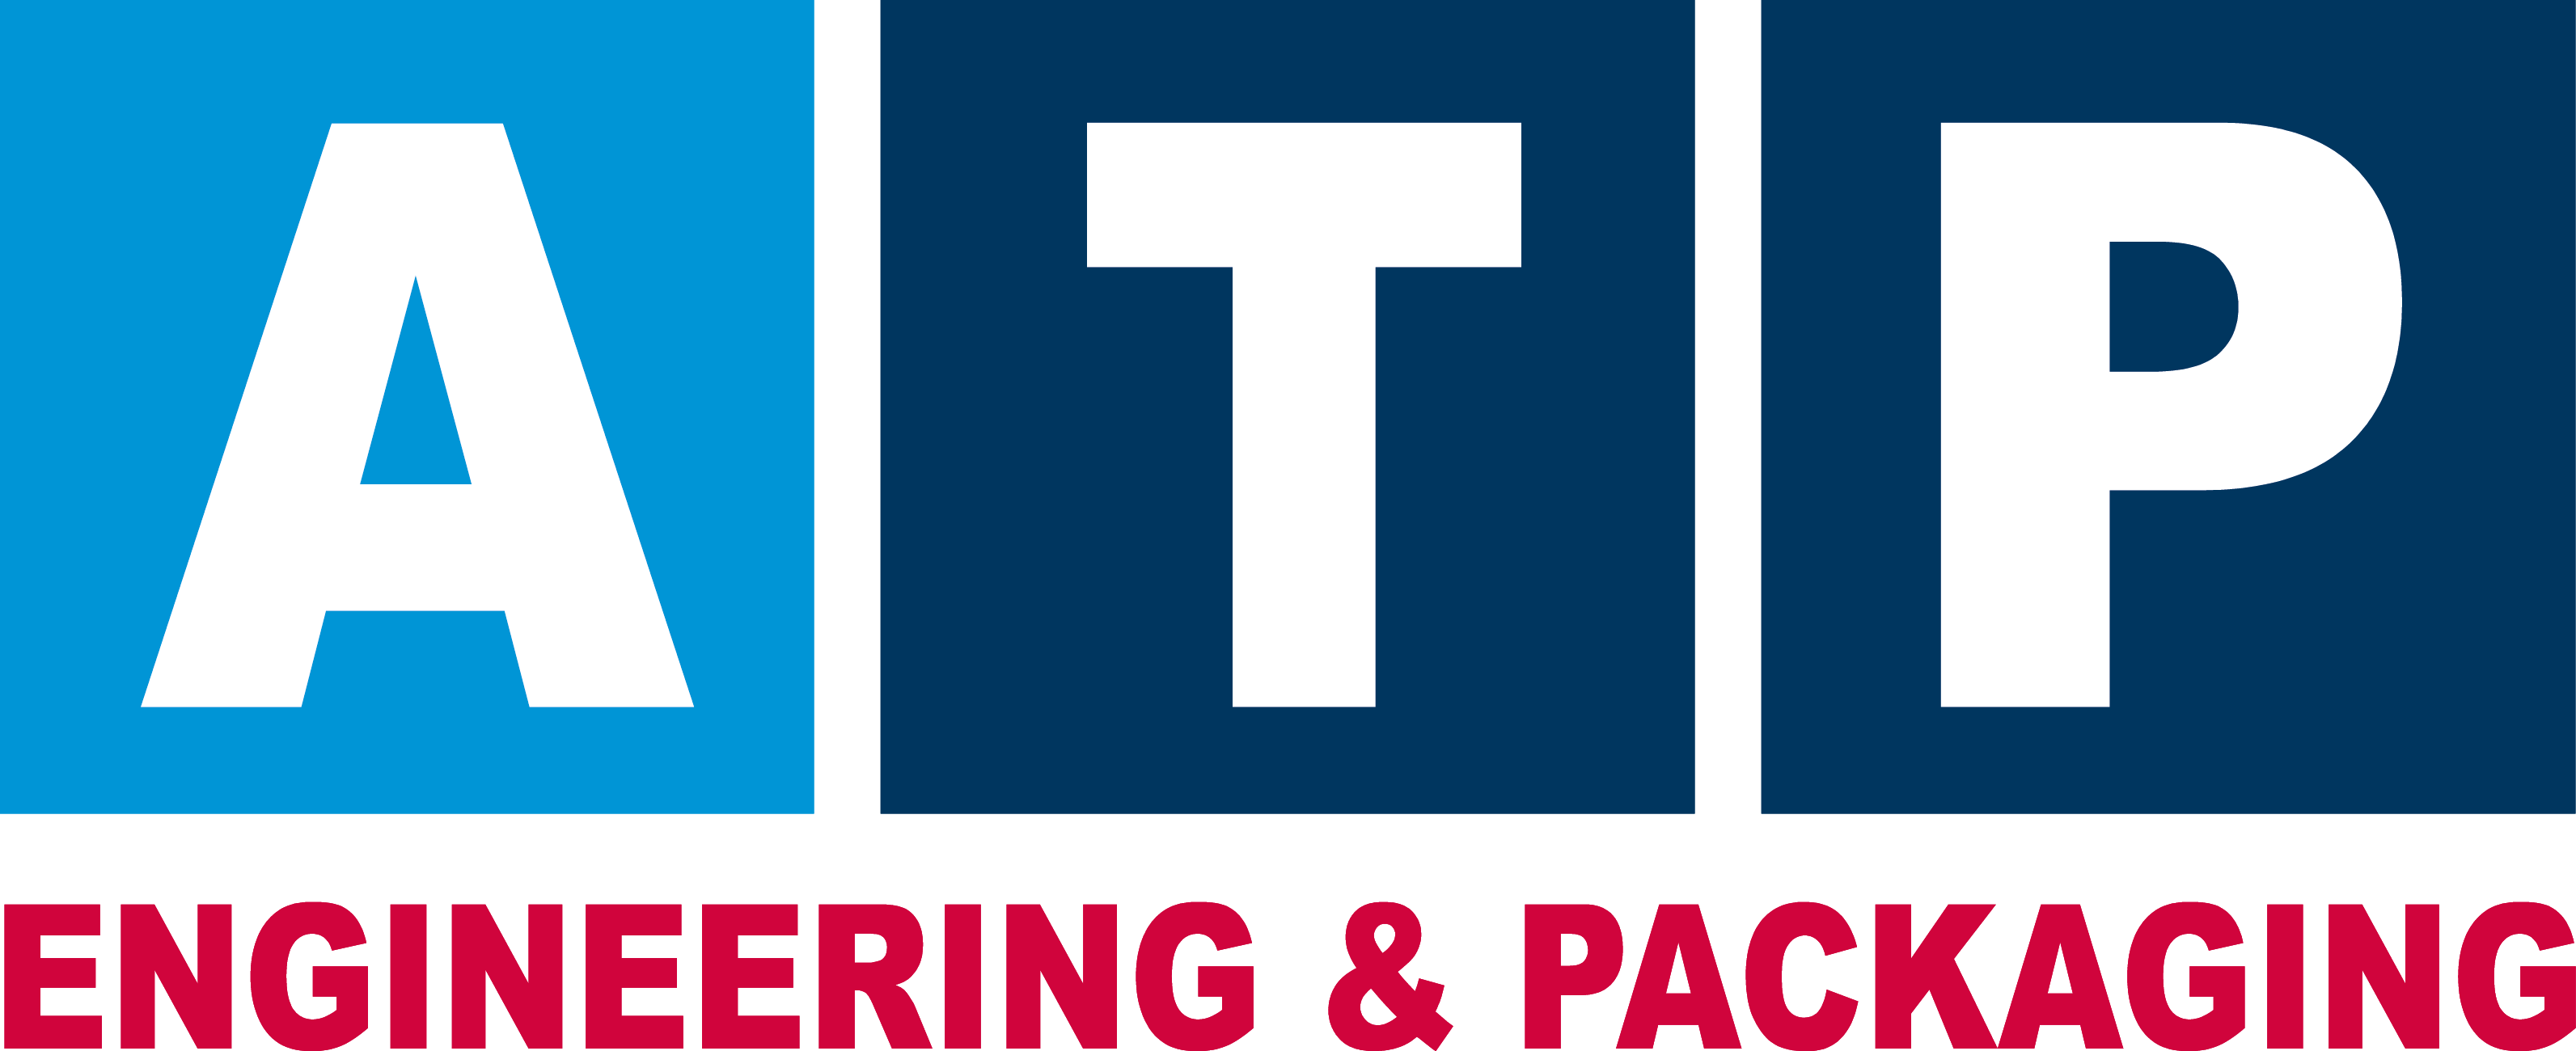 Logo ATP